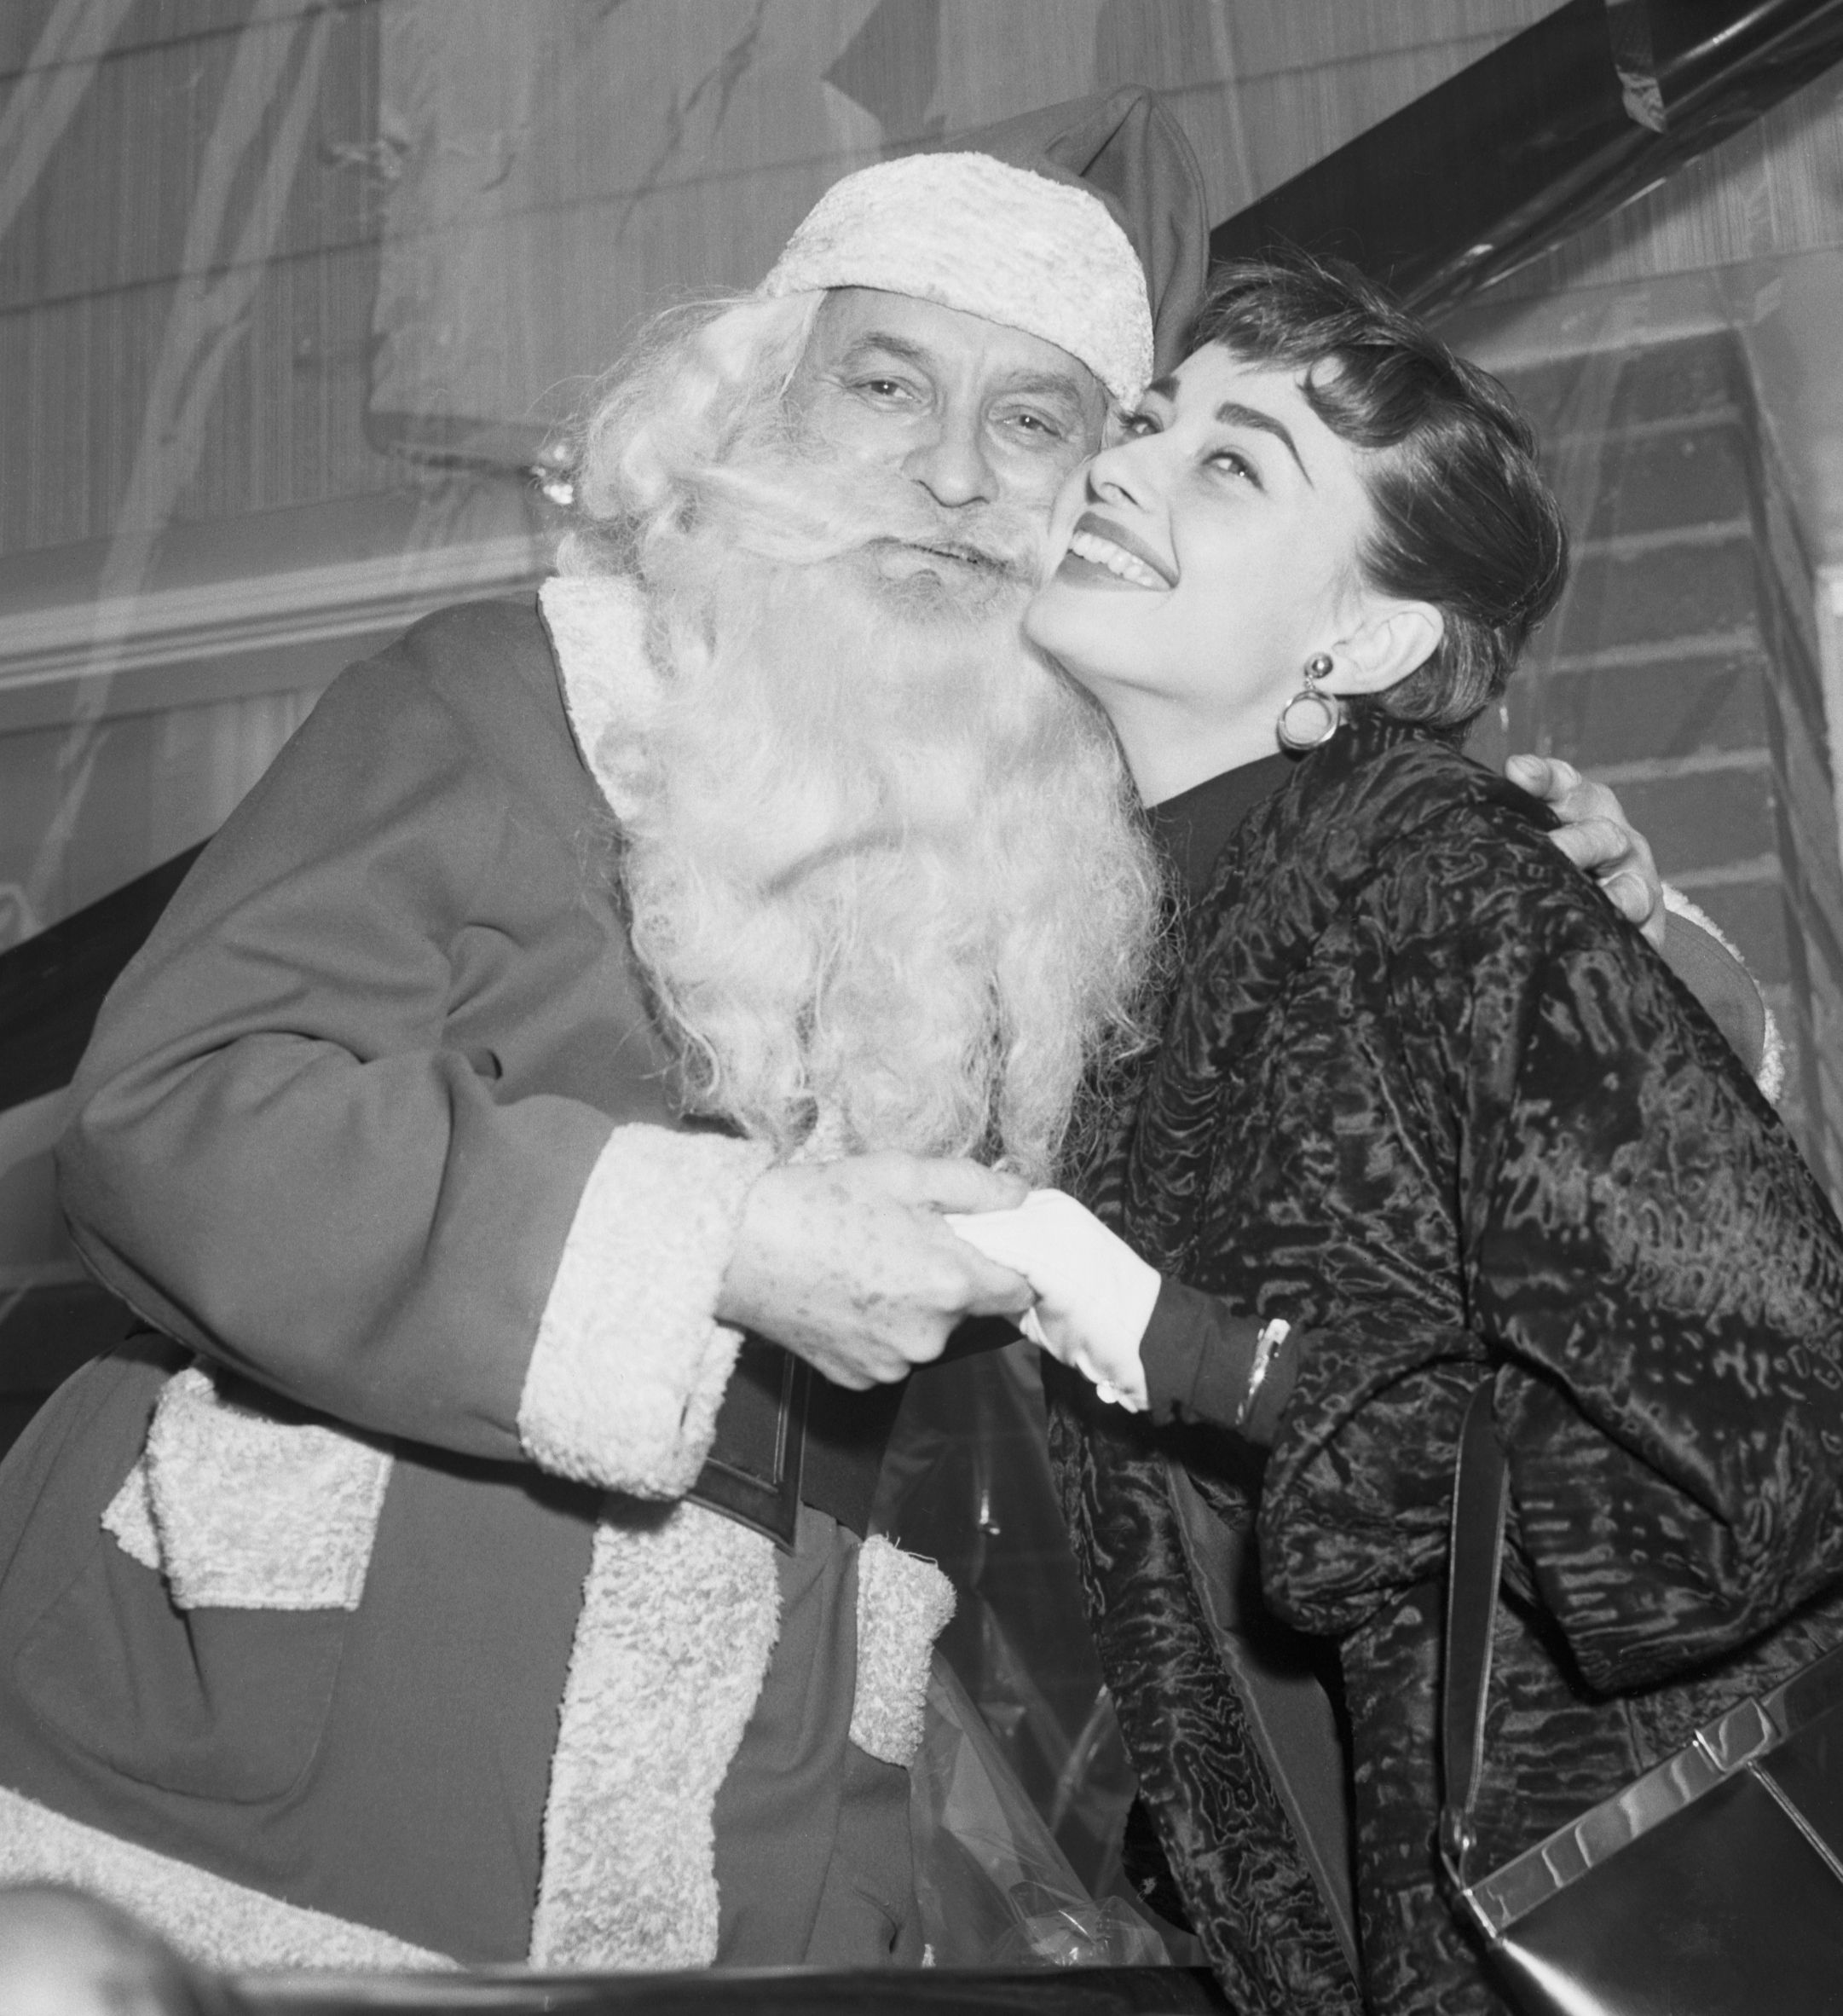 AUDREY HEPBURN IN GRAYSCALE — Audrey Hepburn doing some Christmas